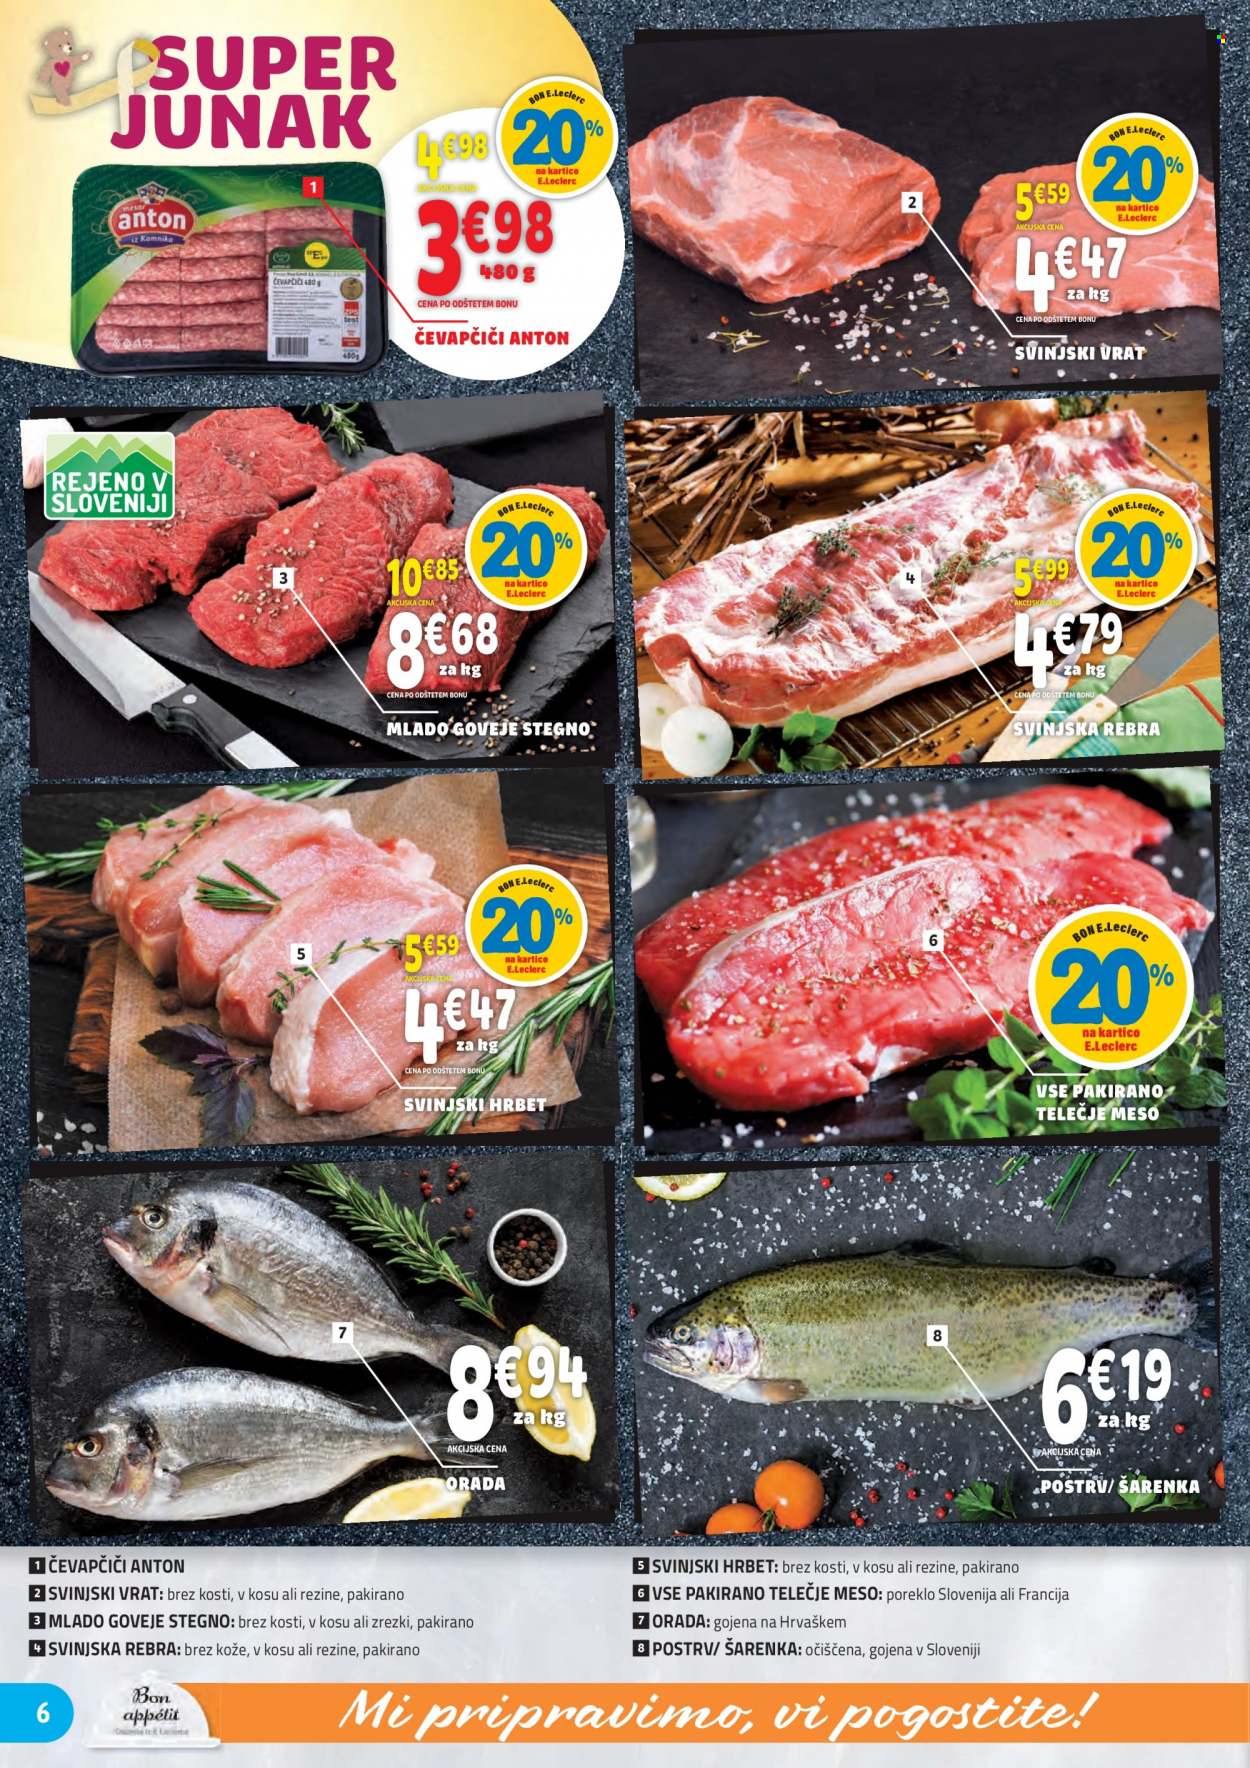 thumbnail - E.Leclerc katalog - 29.9.2021 - 9.10.2021 - Ponudba izdelkov - stegno, goveje meso, rebra, goveje stegno, čevapčiči, svinjska rebra, svinjski vrat, svinjsko meso, orada, riba, šarenka. Stran 6.